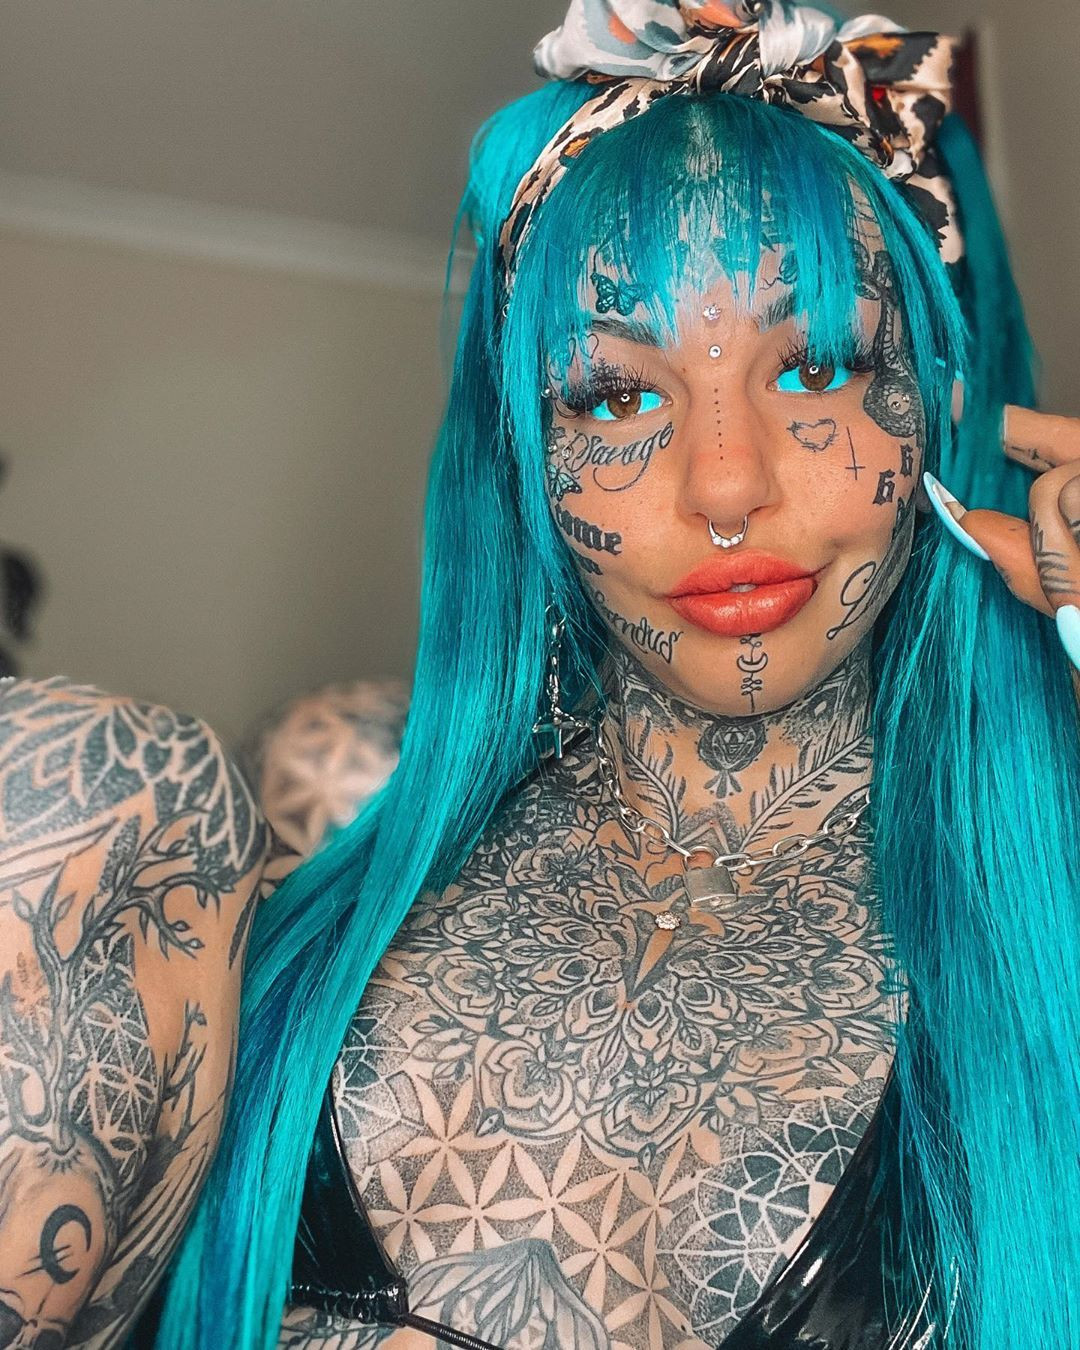 Amber Luke Dövmelerini Gösterdiği İçin Yüz Binlerce Takipçili Instagram Hesabı Silindi - Sayfa 2